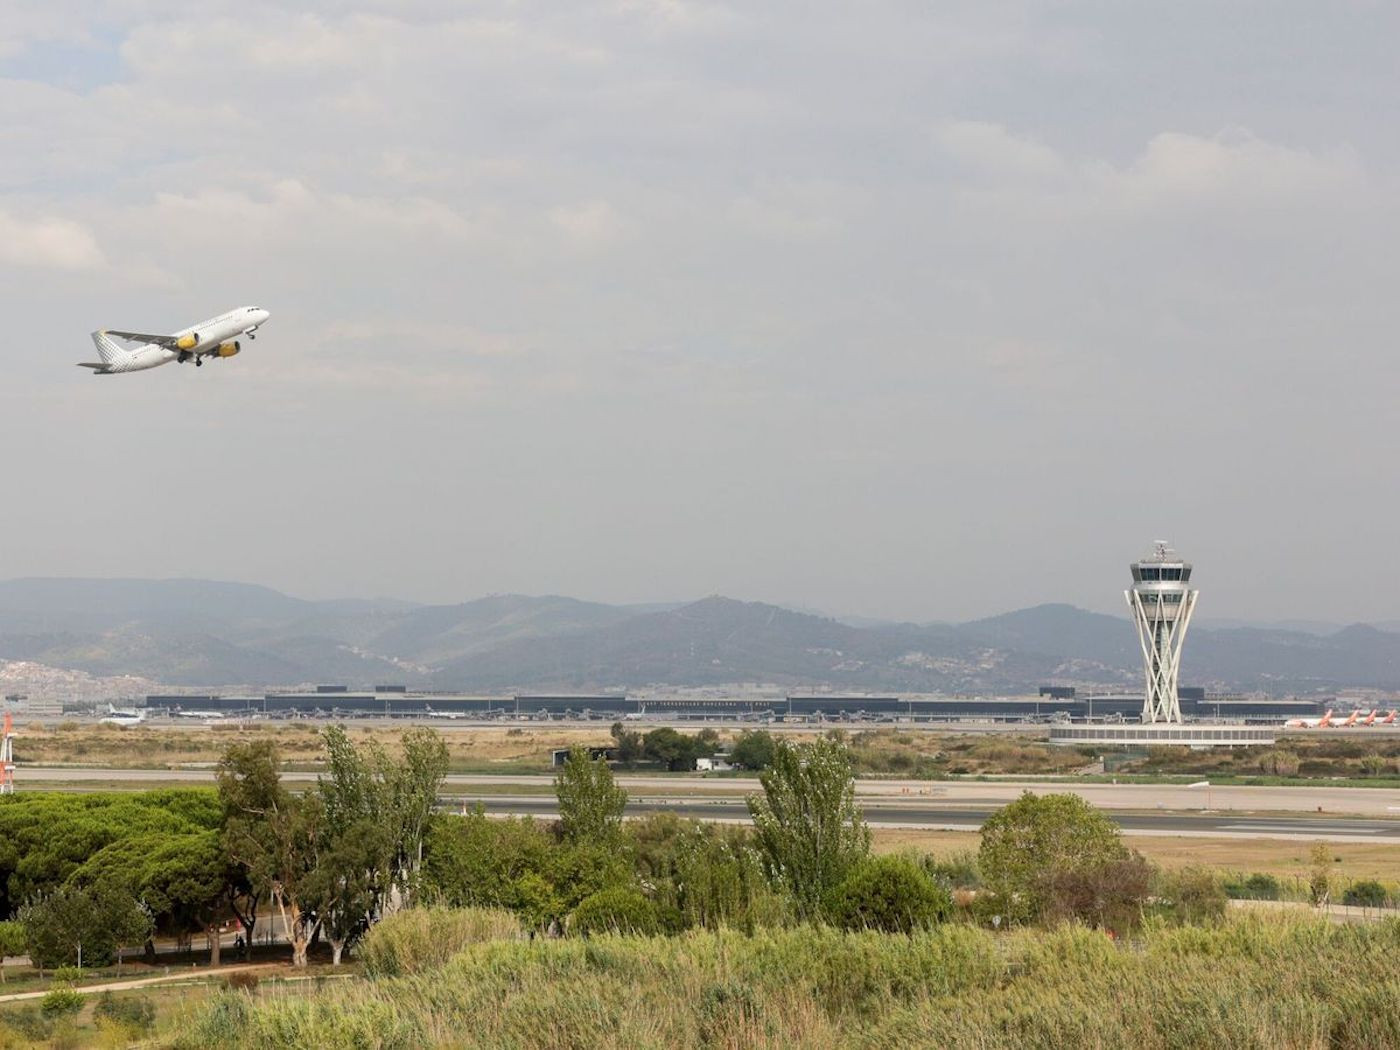 Un avión despega en el Aeropuerto de Barcelona-El Prat / EFE